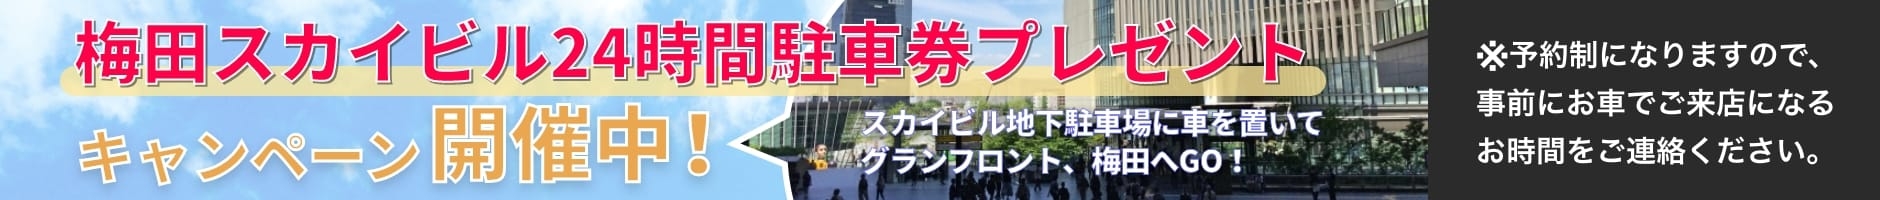 平日限定 梅田スカイビル24時間駐車券プレゼントキャンペーン開催中!